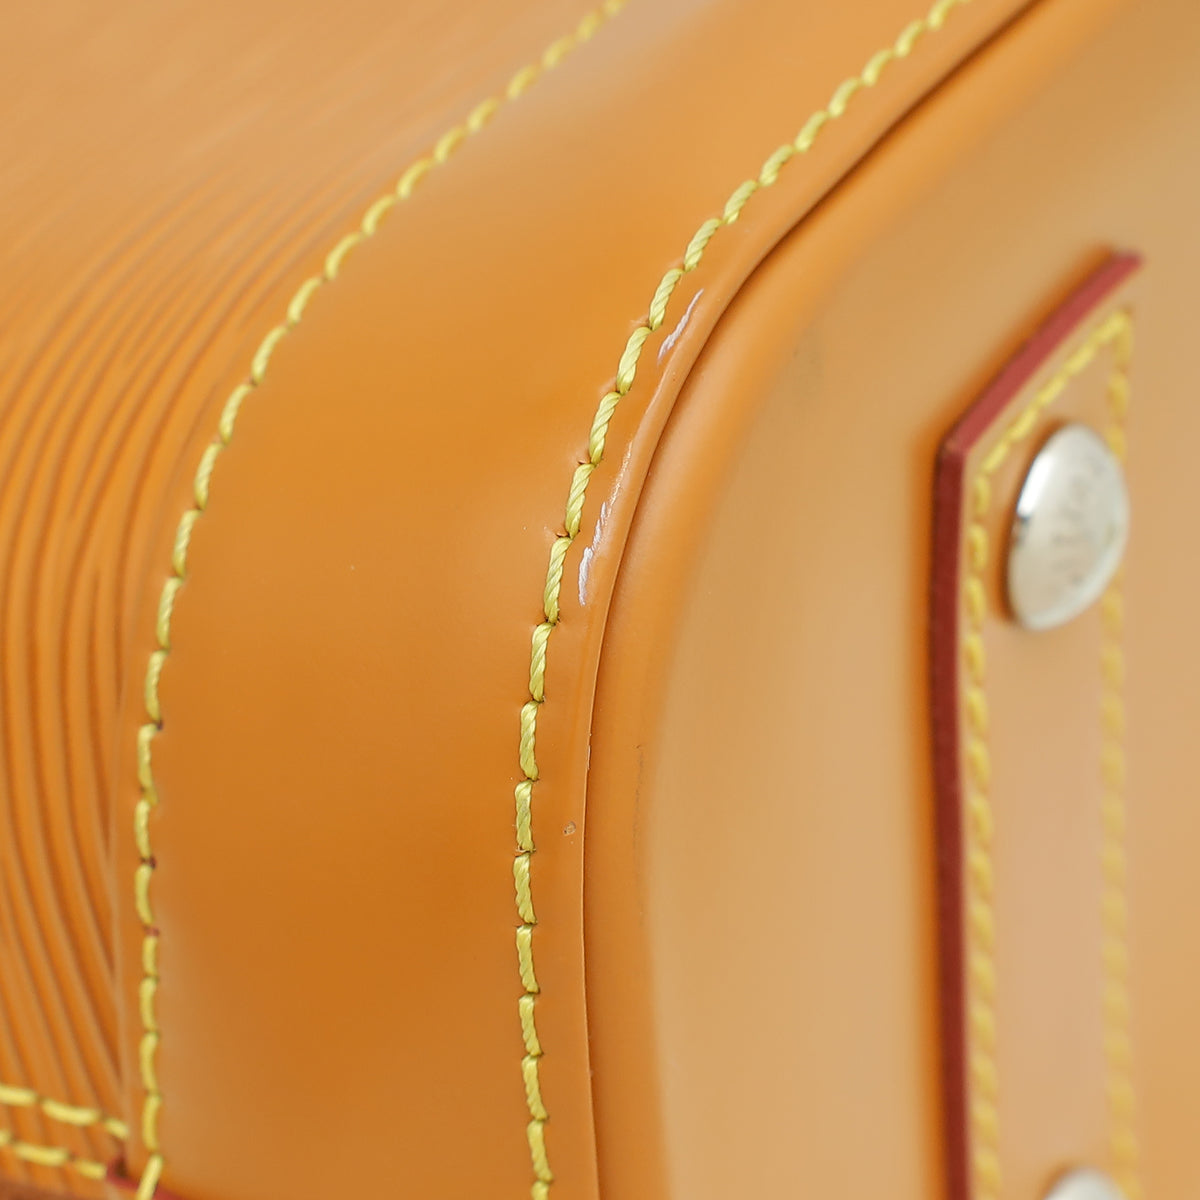 Louis Vuitton Honey Gold Alma Sporty BB Bag